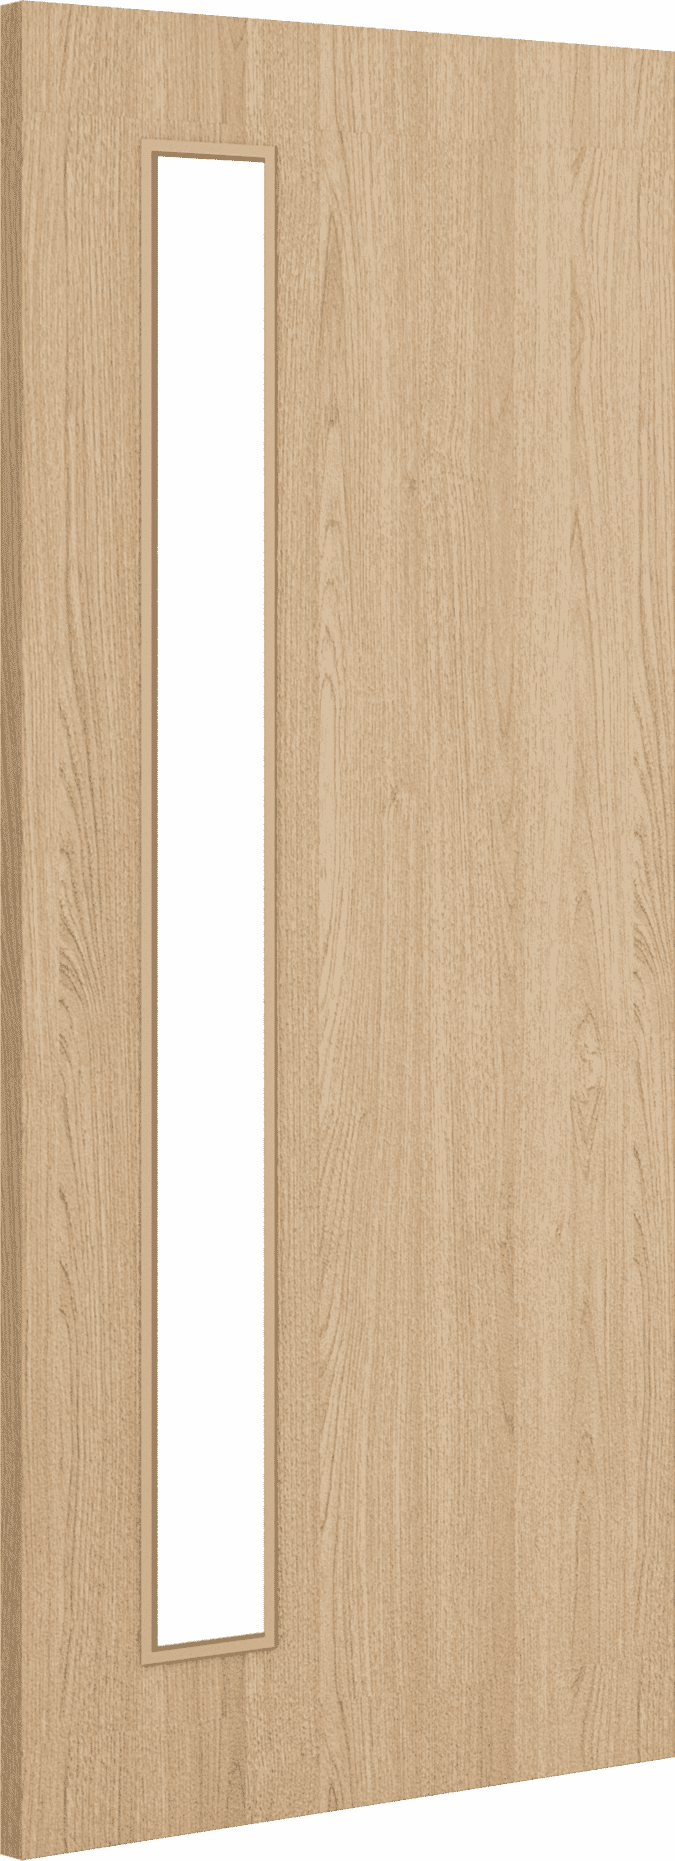 2040mm x 826mm x 44mm Architectural Oak 06 Clear Glazed - Prefinished FD30 Fire Door Blank